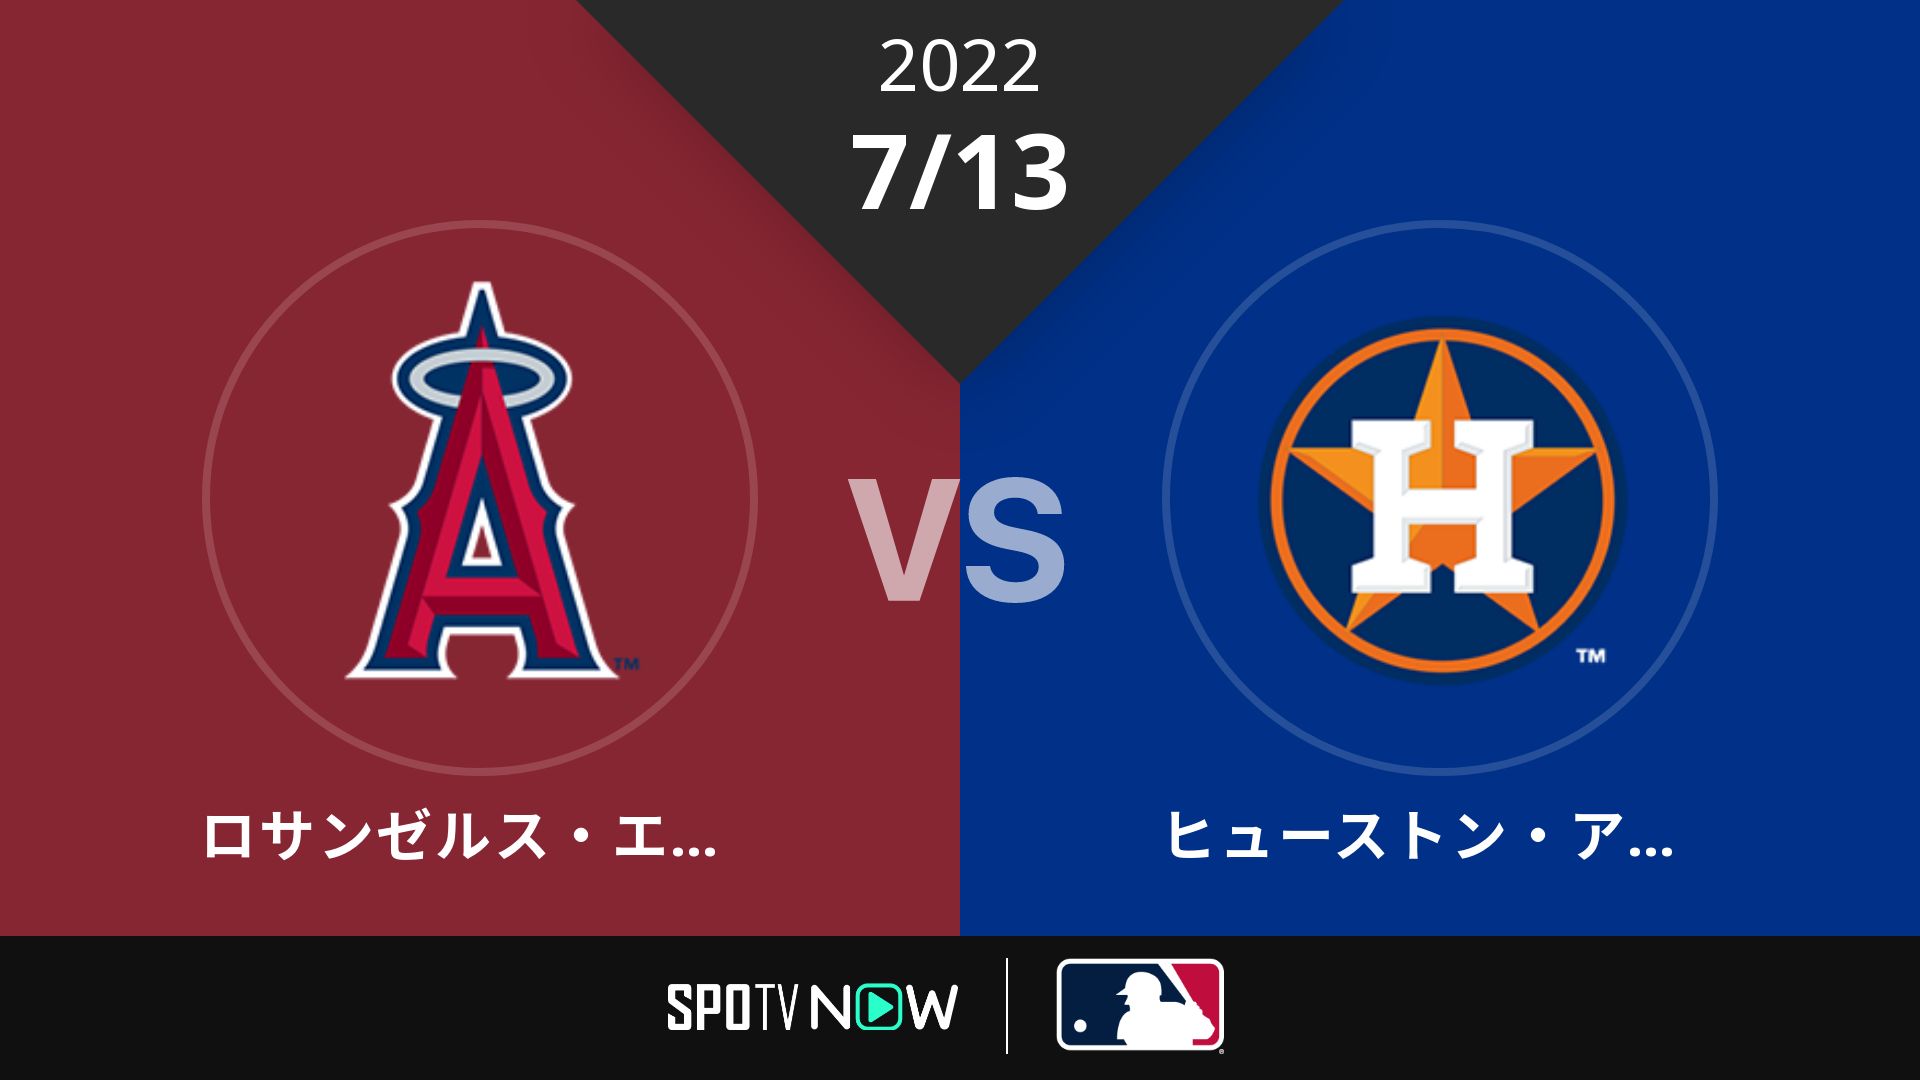 2022/7/13 エンゼルス vs アストロズ [MLB]